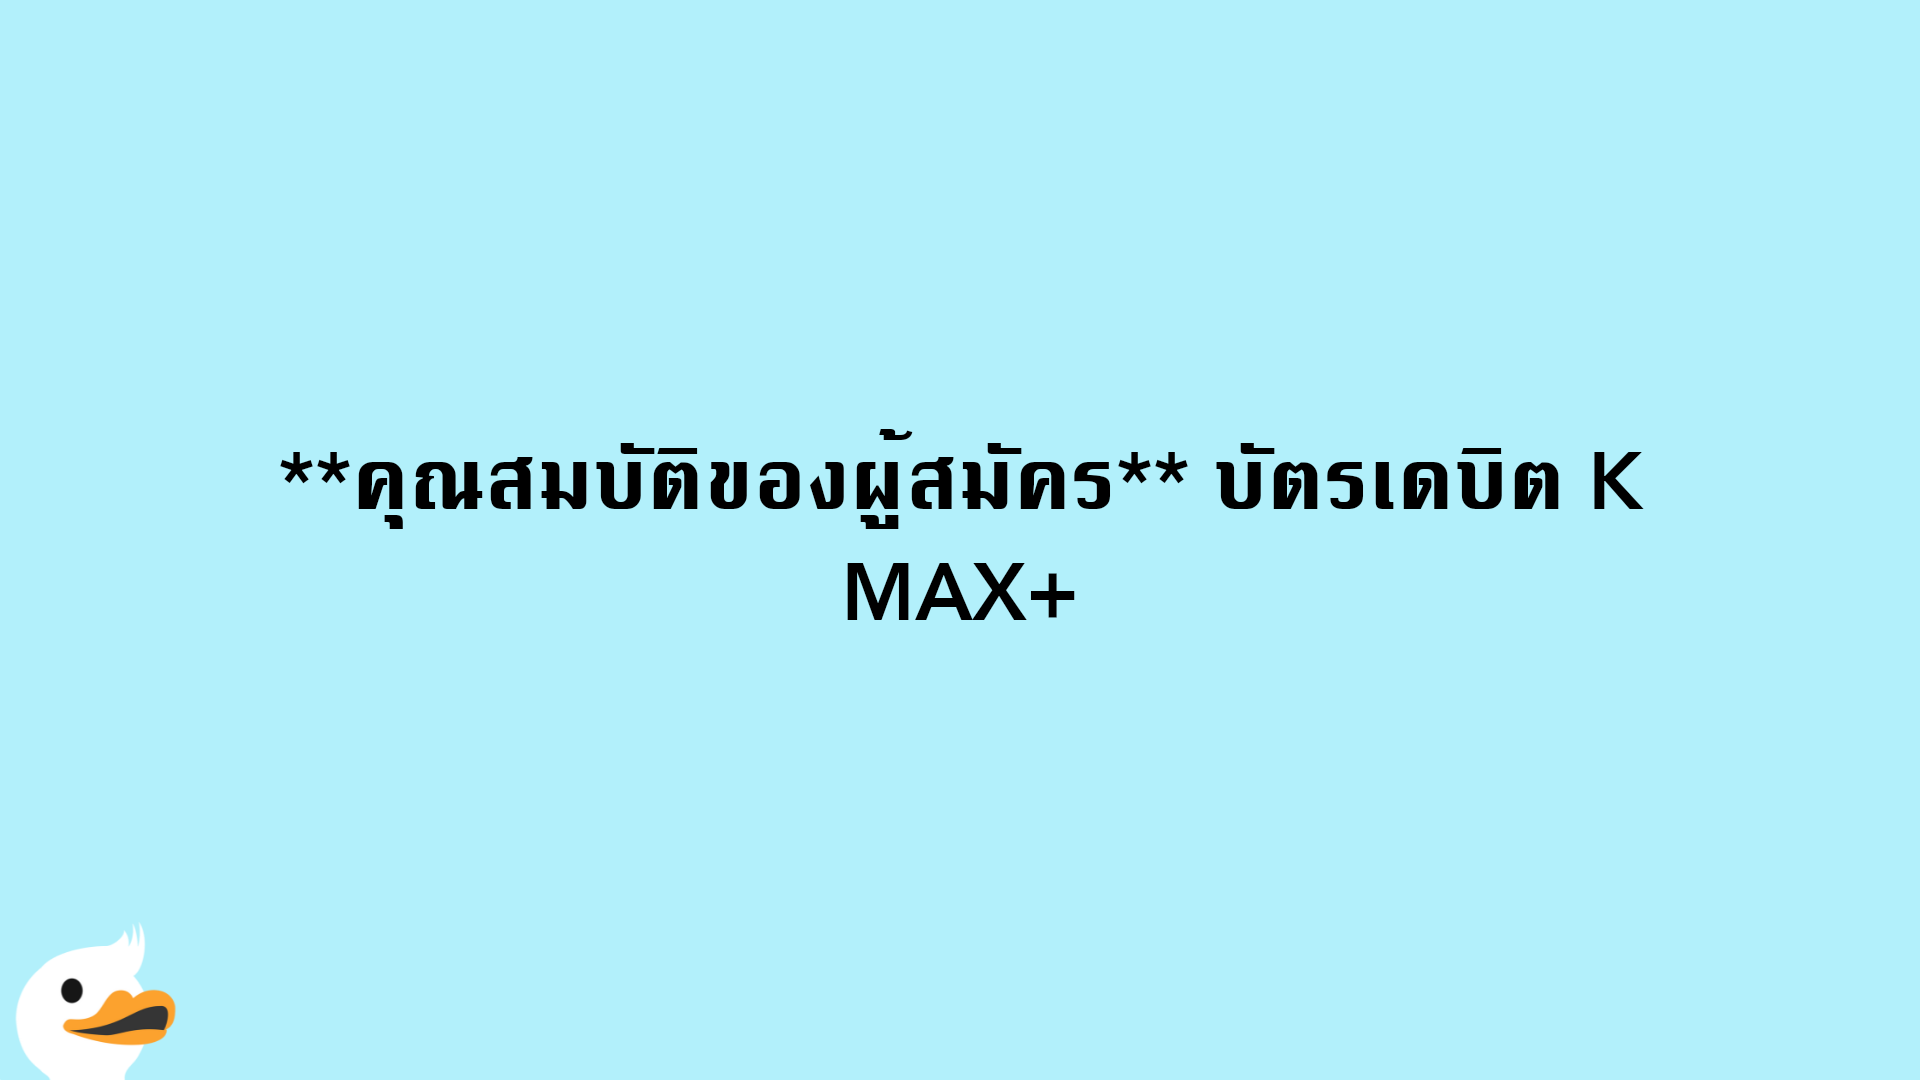 คุณสมบัติของผู้สมัคร บัตรเดบิต K MAX+